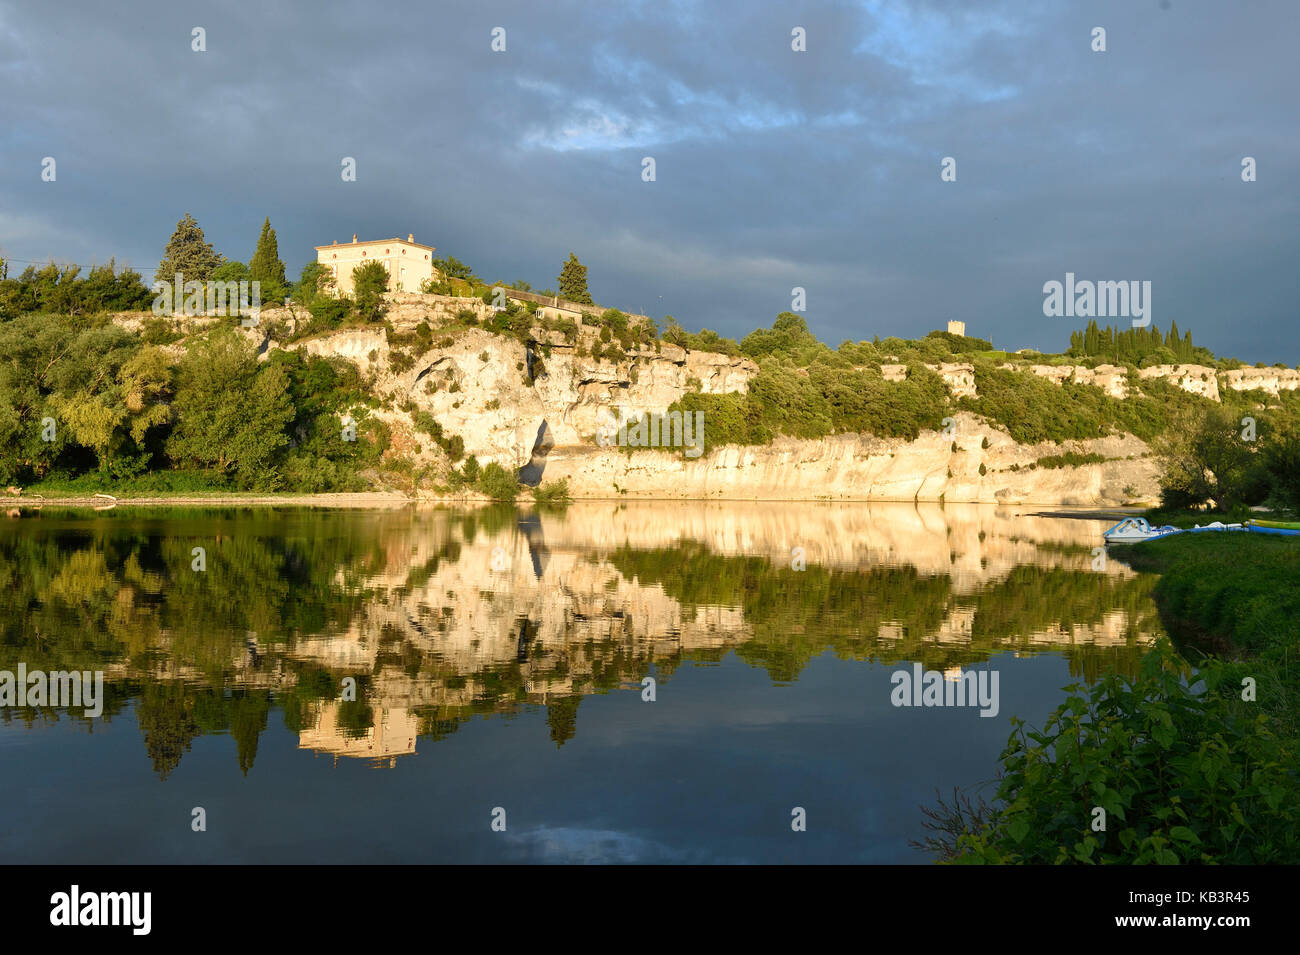 France, Gard, Aigueze, labelled Les Plus Beaux Villages de France (The Most Beautiful Villages of France), Medieval village perched above the Ardeche river Stock Photo